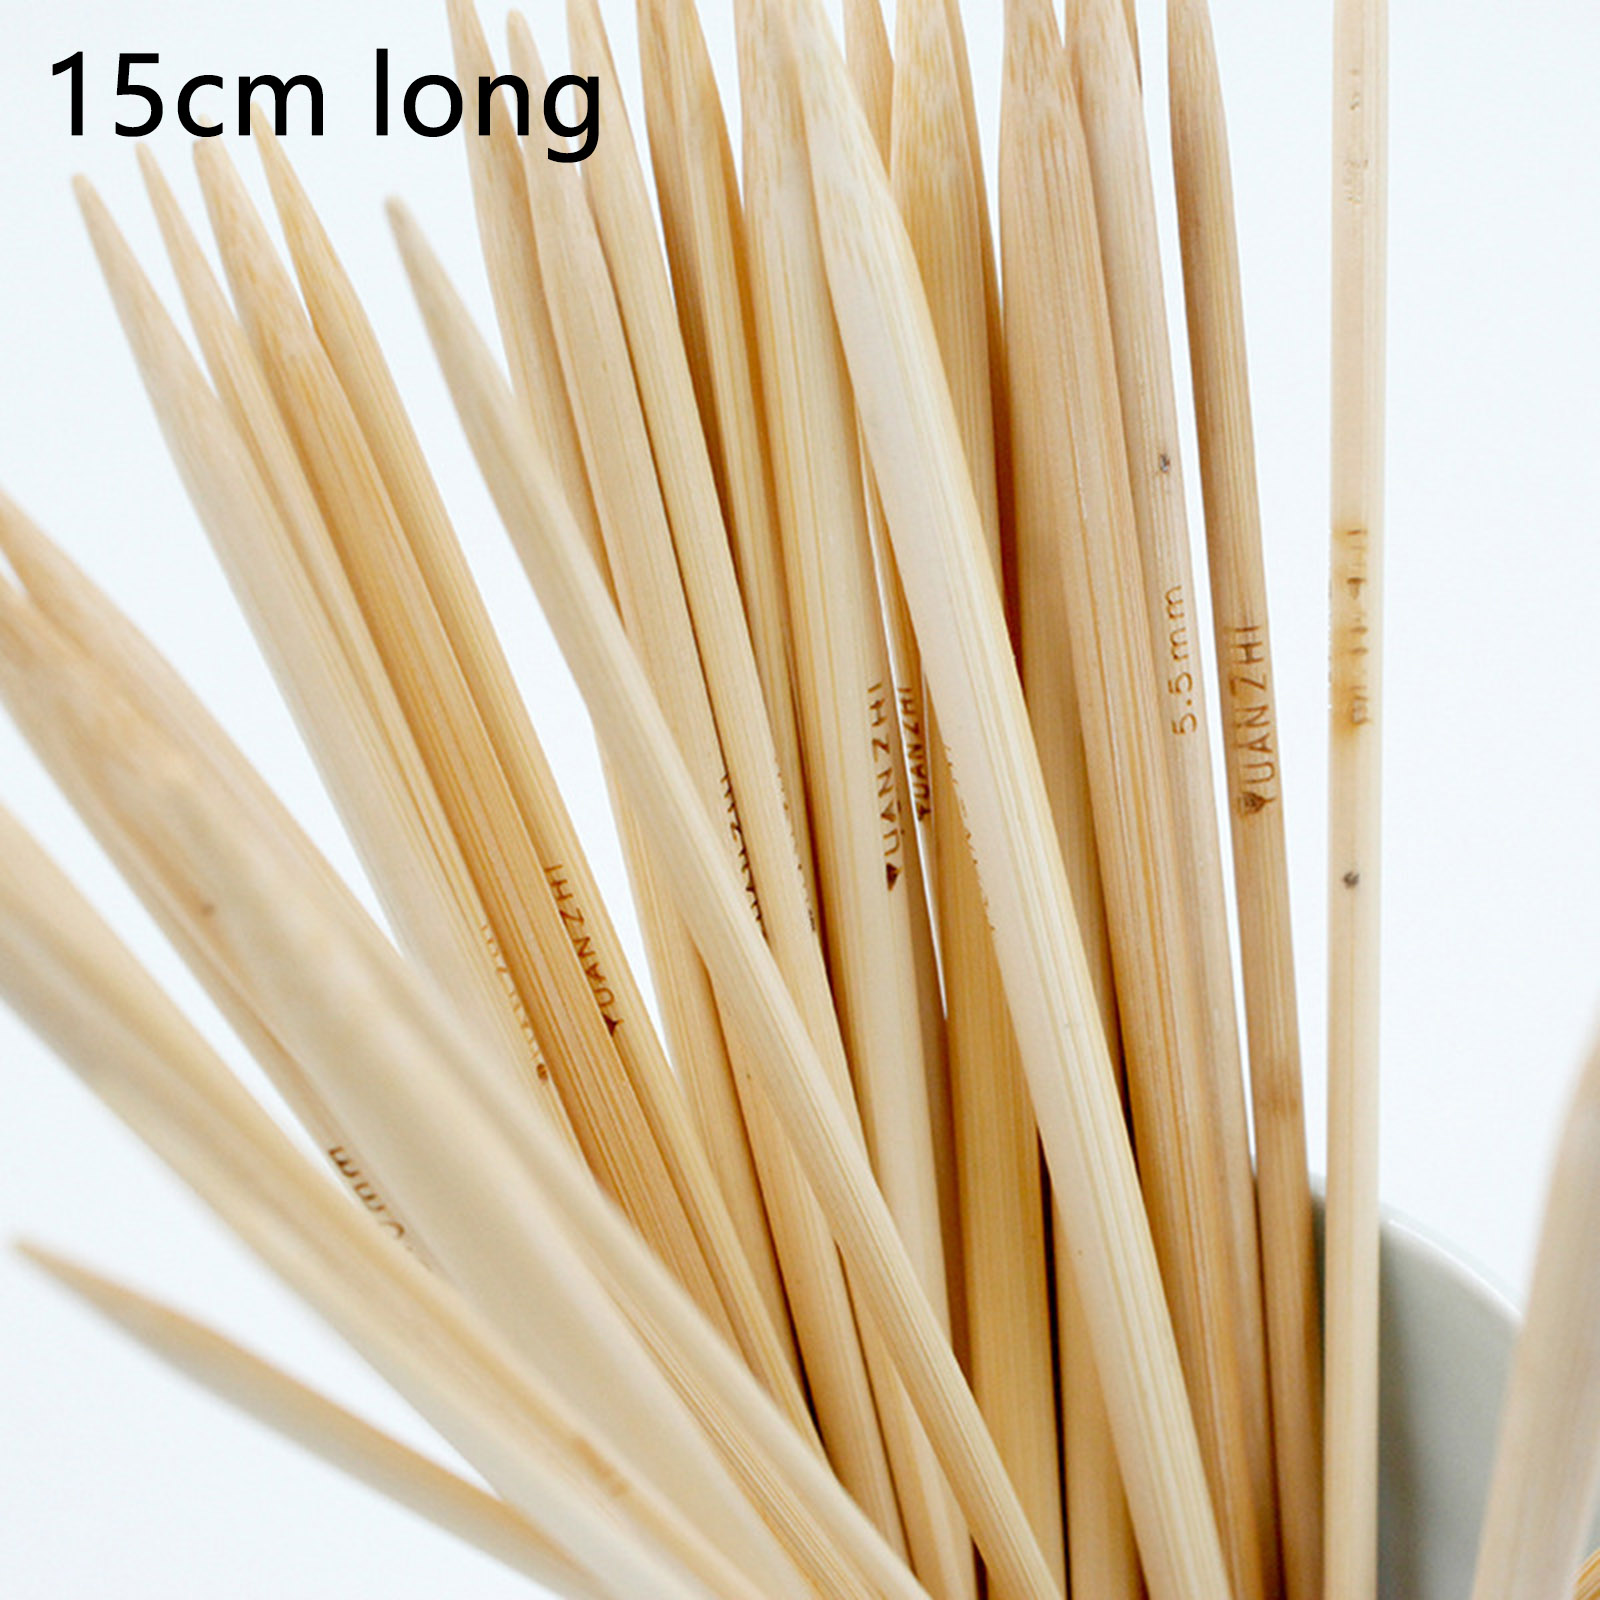 竹 ダブルポイント 編み針 ナチュラル 15cm 長さ の画像